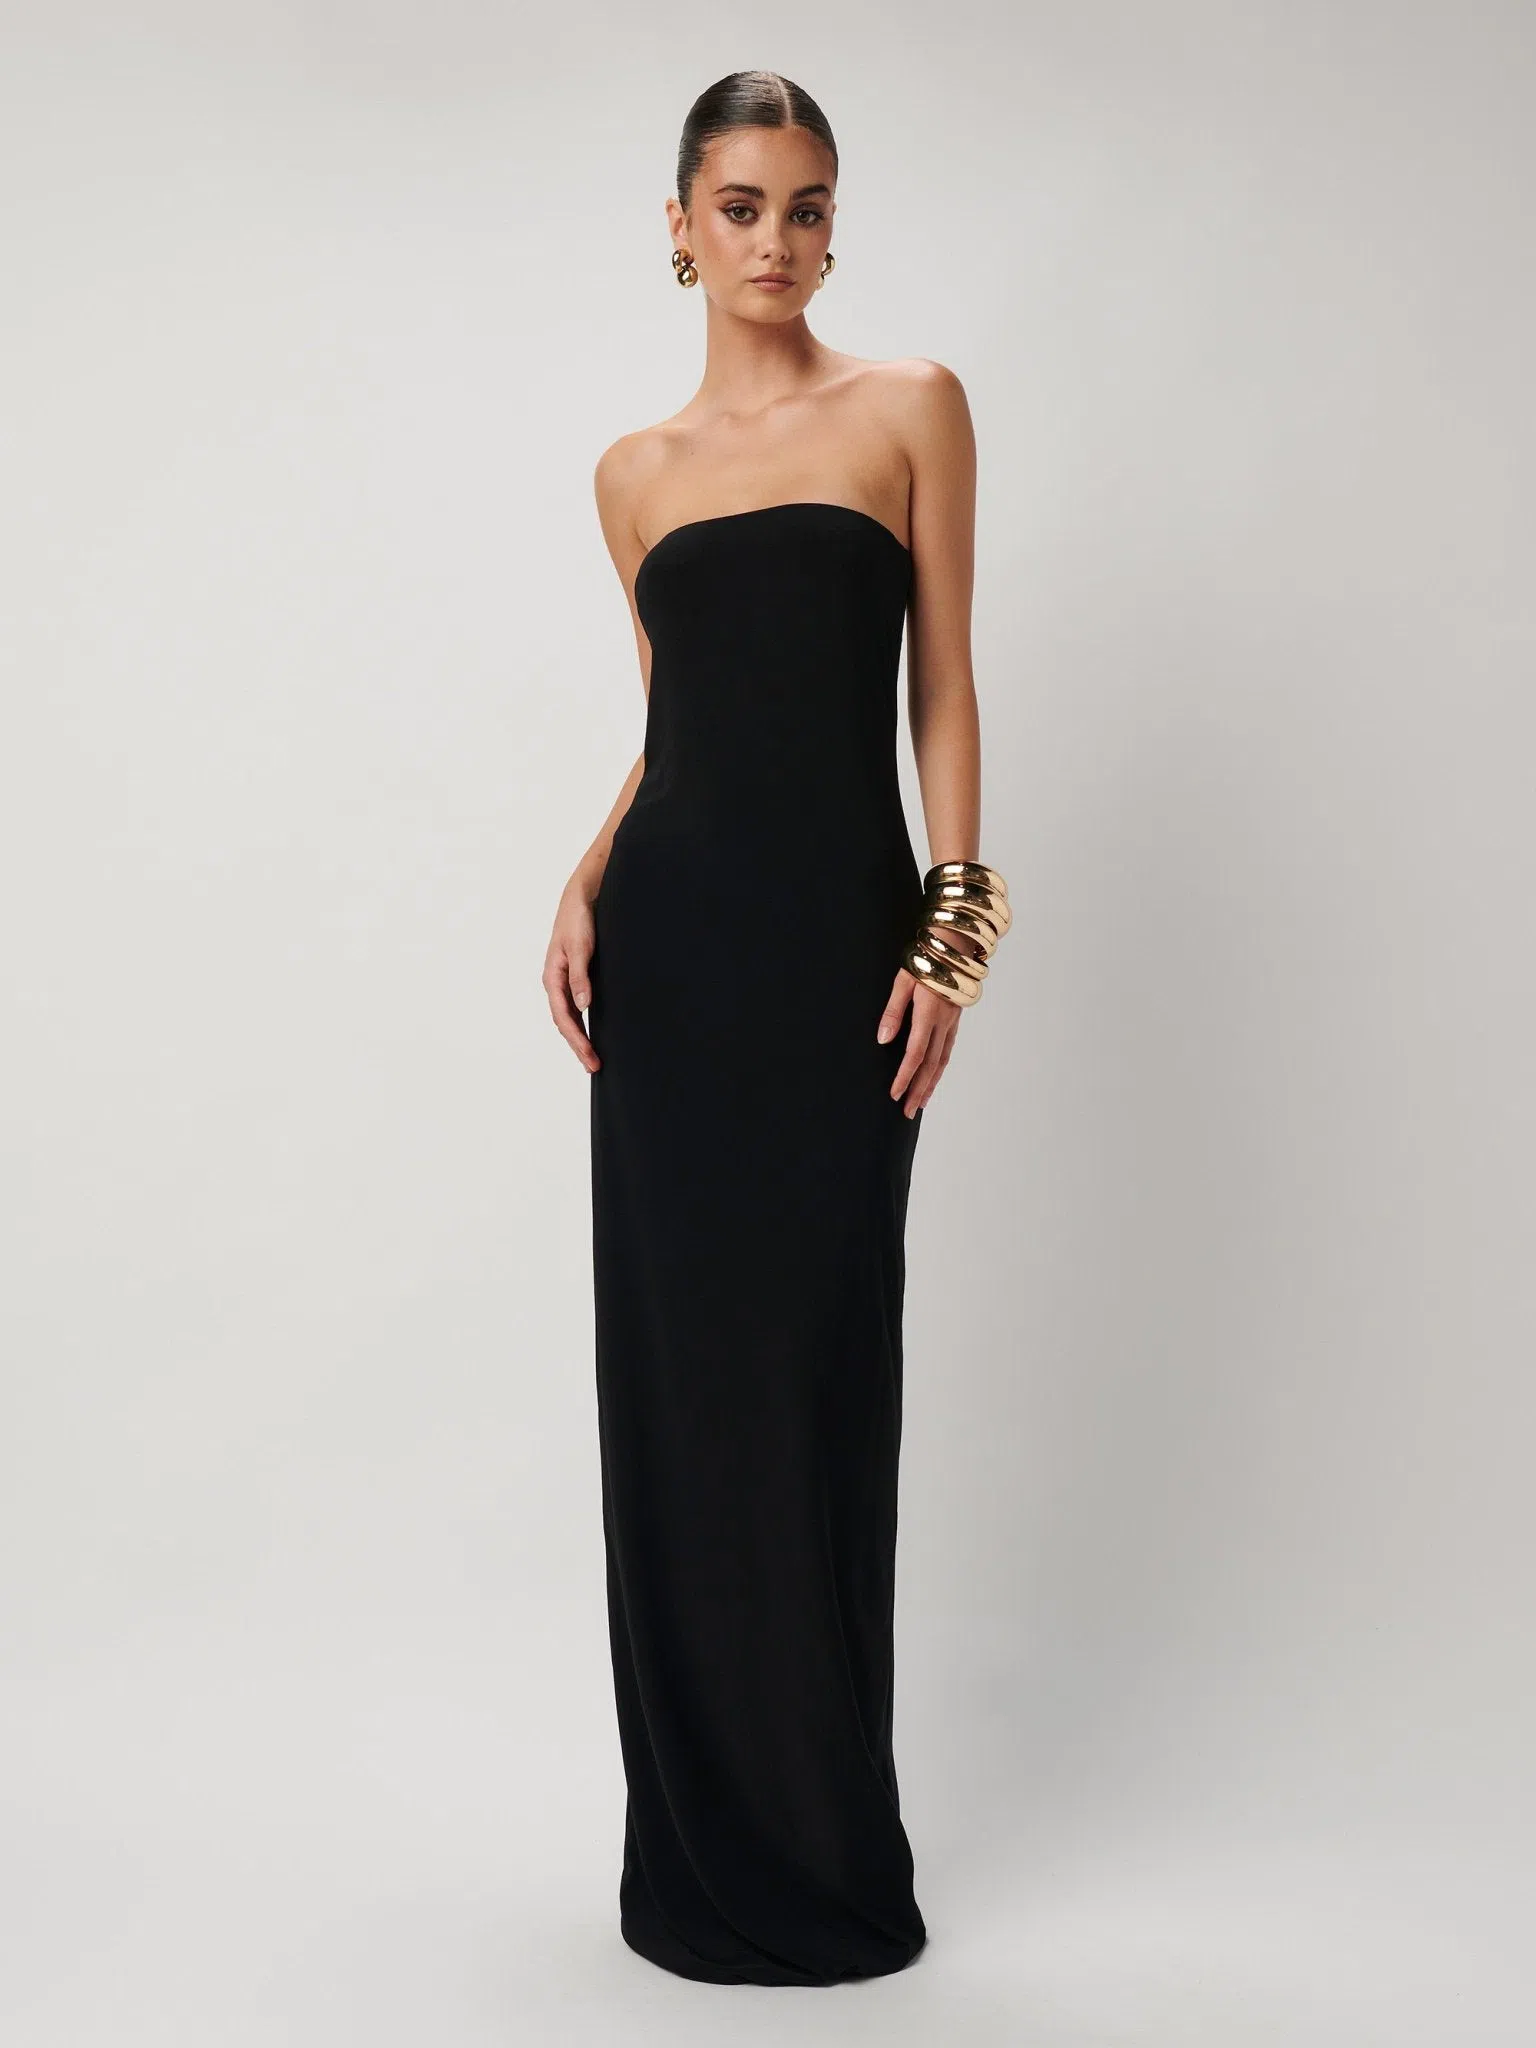 Effie Kats Danita Dress Black Size L/ Au 12 | The Volte